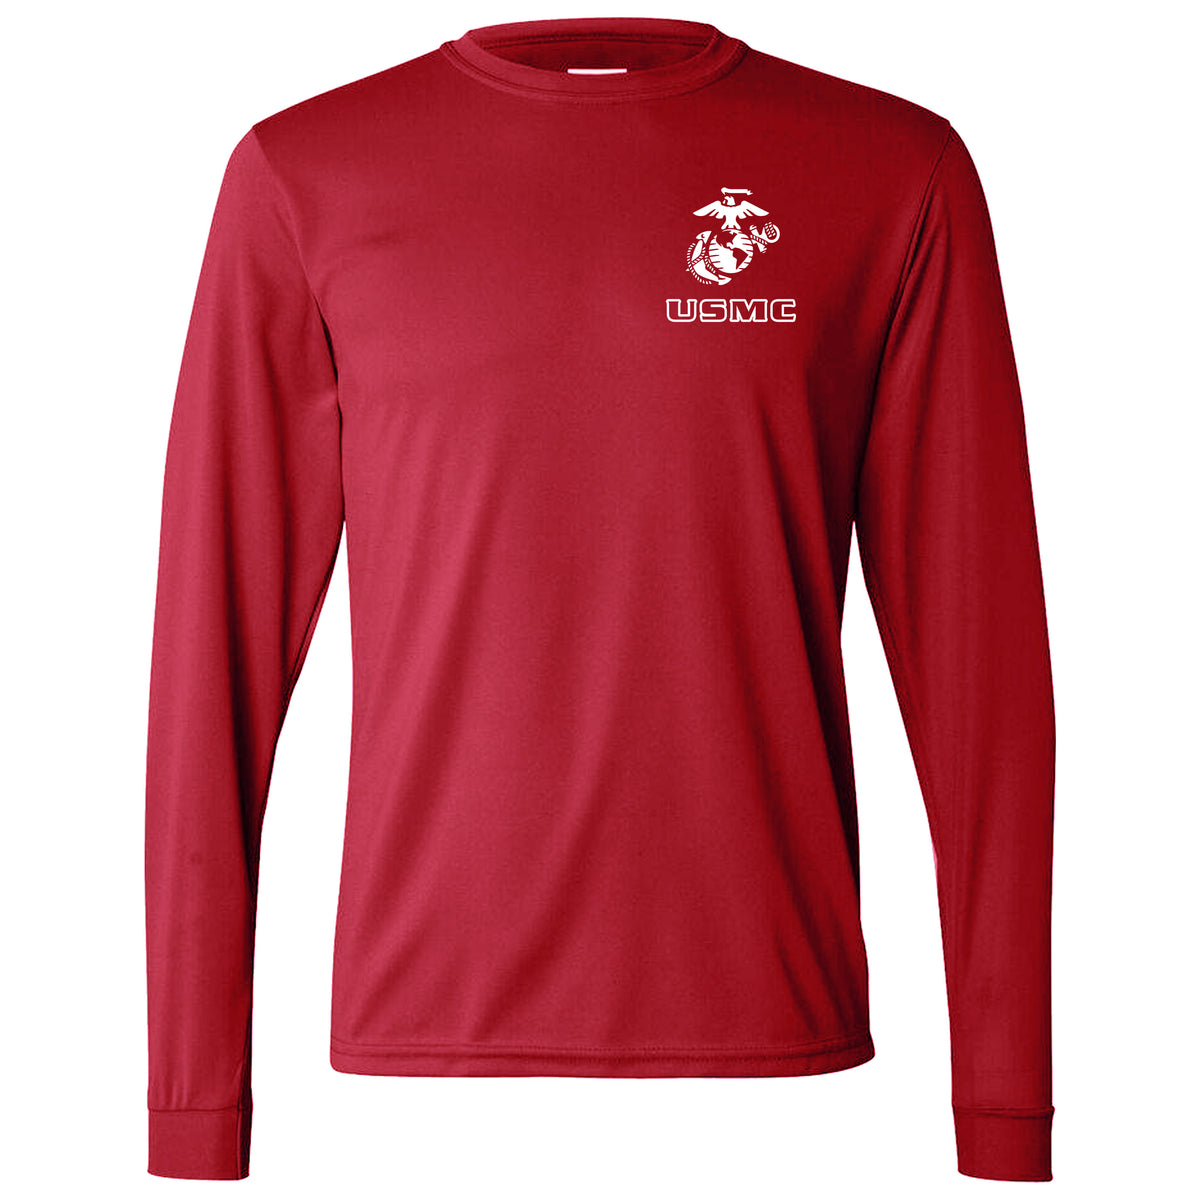 EGA Over USMC Dri-Fit Performance Long Sleeve T-Shirt